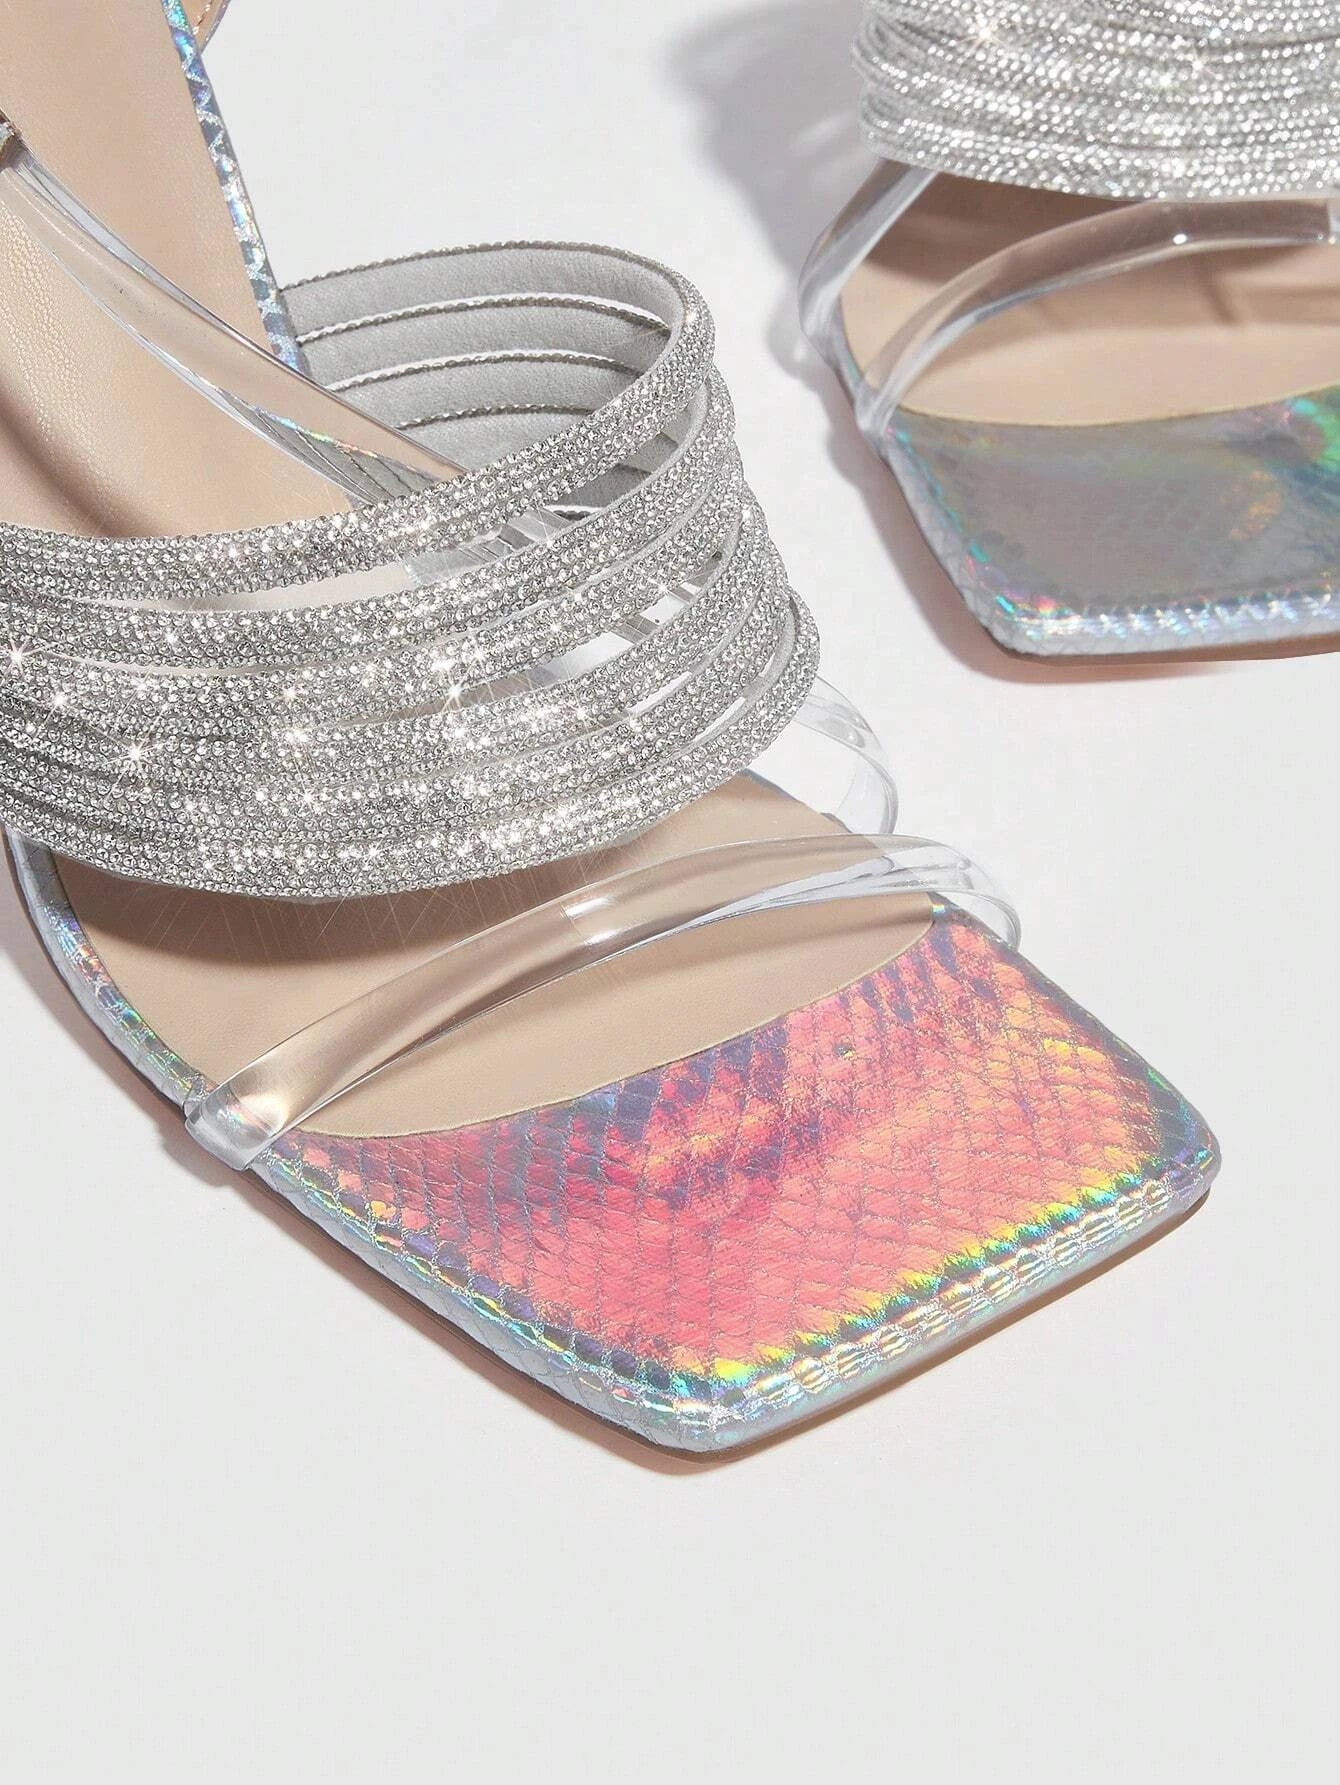 Glamorous Glitter Slingback Sandals